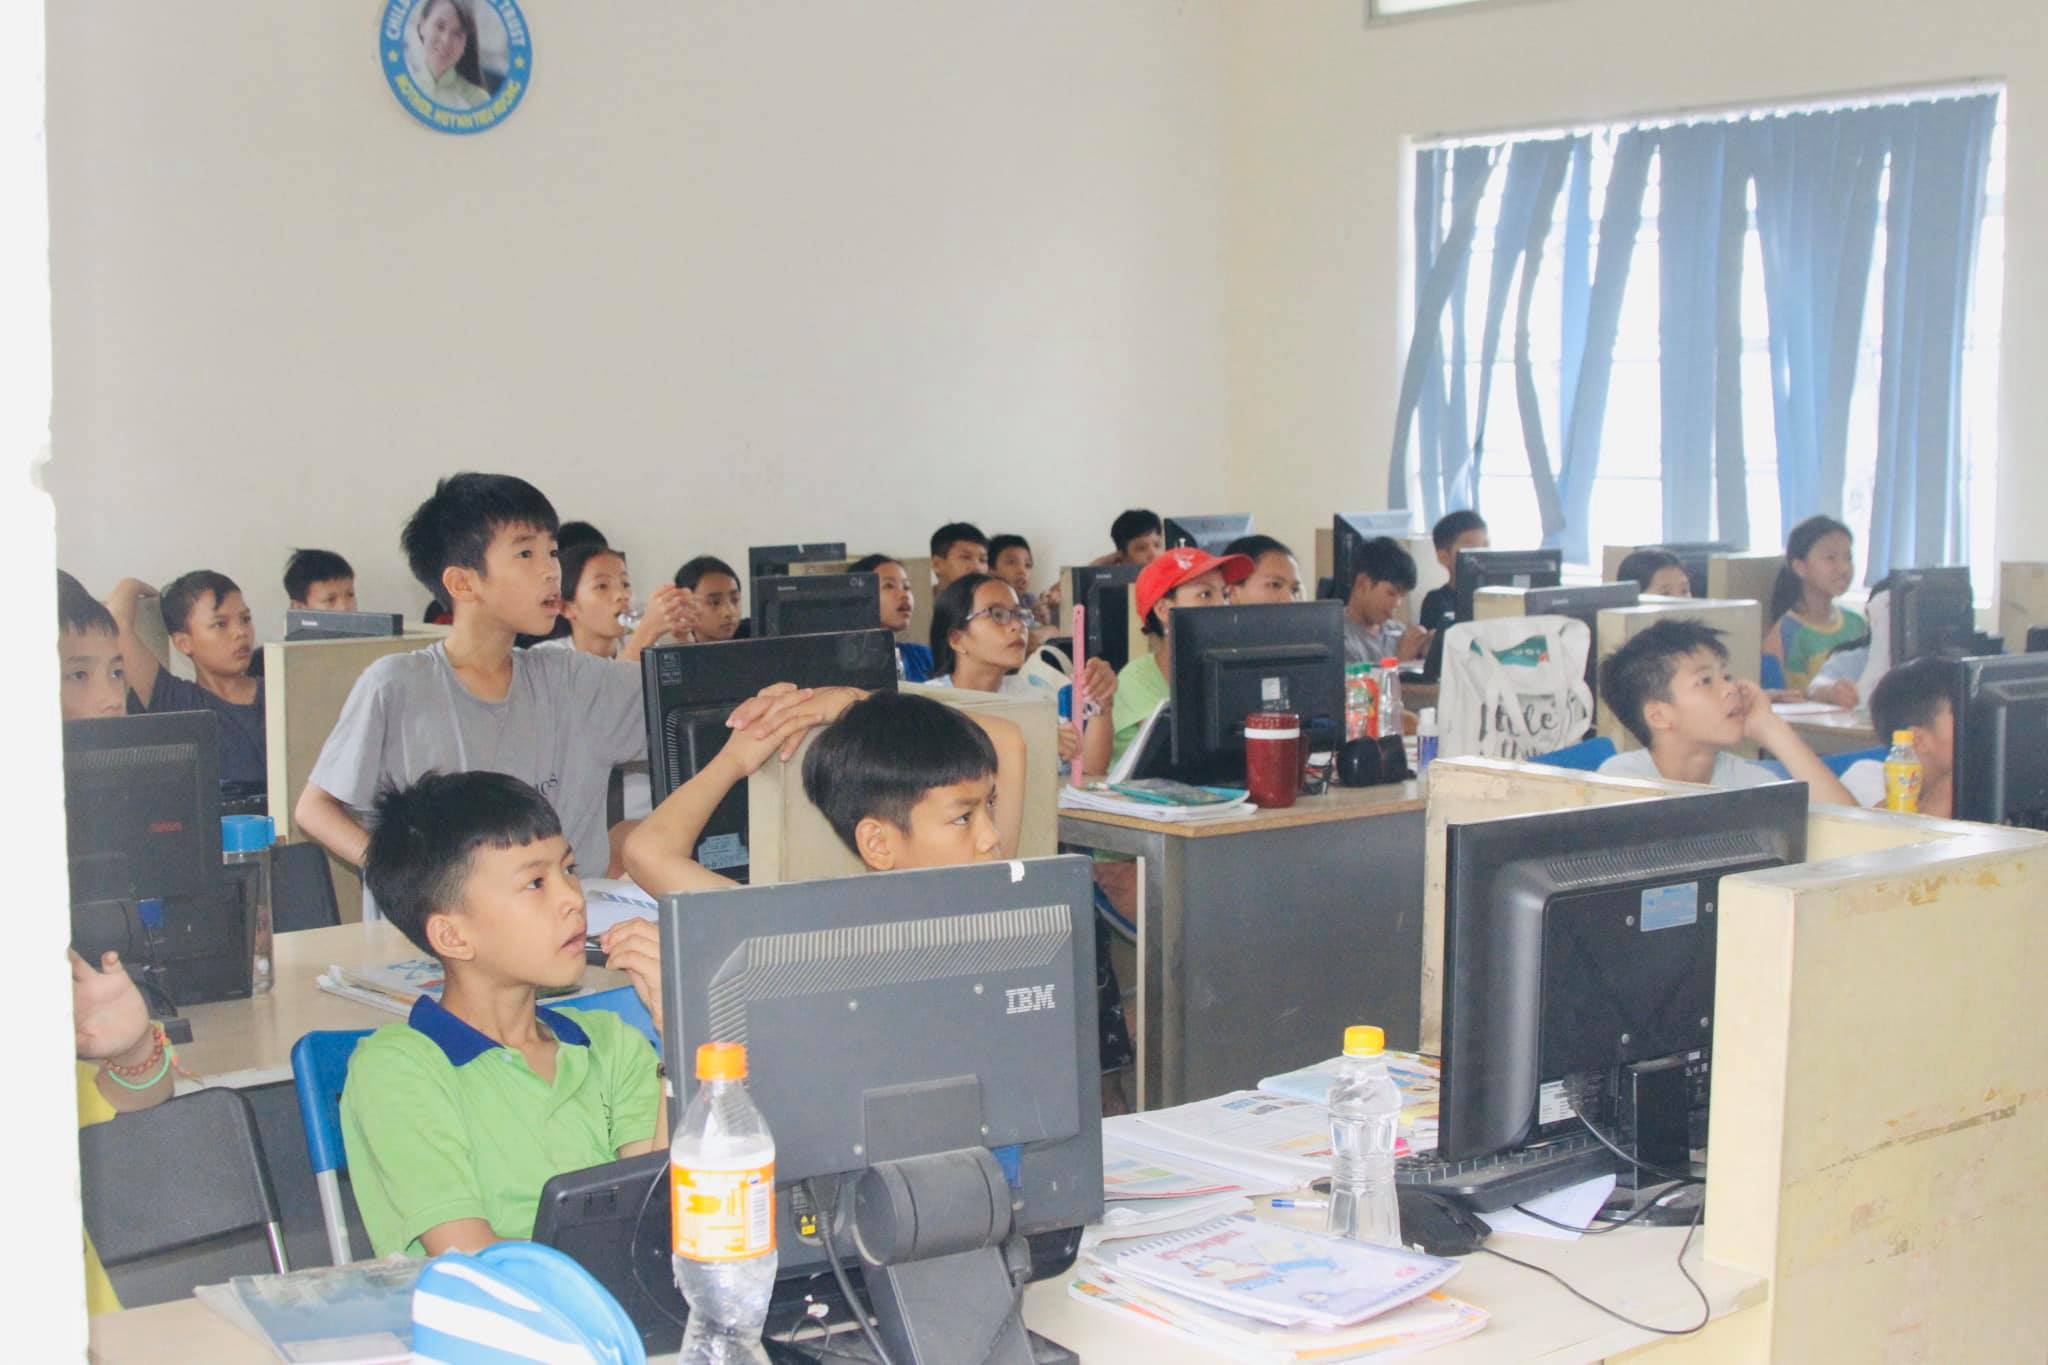 Vì dịch bệnh COVID-19 mà các bé trong Trung tâm Nhân đạo Quê Hương không thể đến trường, tuy nhiên các bé đã được học tập online ngay tại mái nhà chung của mình bằng những thiết bị mua được từ sự giúp đỡ, sẻ chia của Sư Phụ Thích Trúc Thái Minh